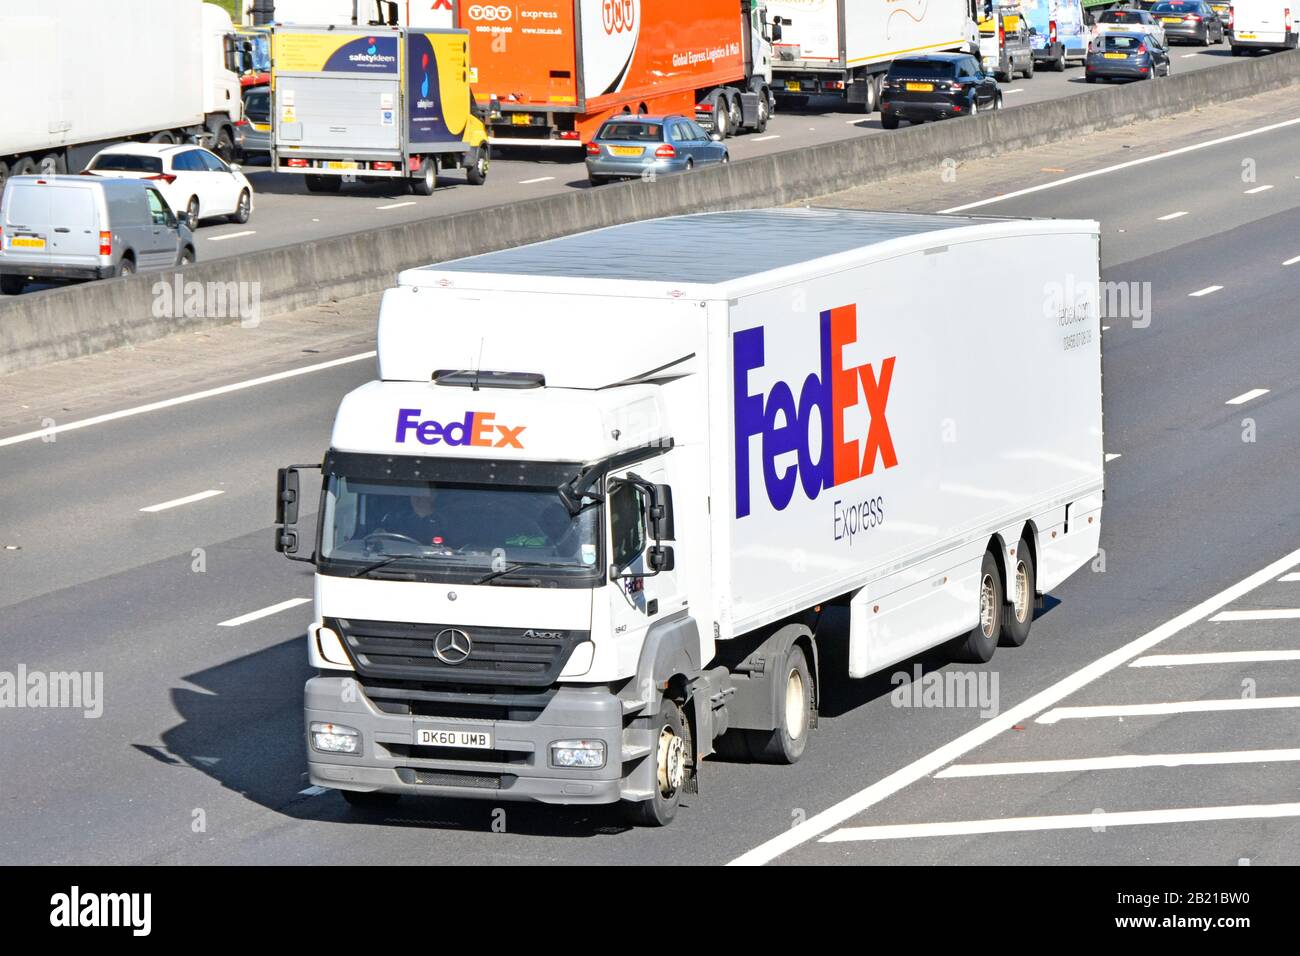 Ansicht von oben und vorne von FedEx Express ein amerikanischer Kurierpost- und Postdienst mit Firmenlogo auf lkw-LKW und Anhänger auf der britischen Autobahn Stockfoto